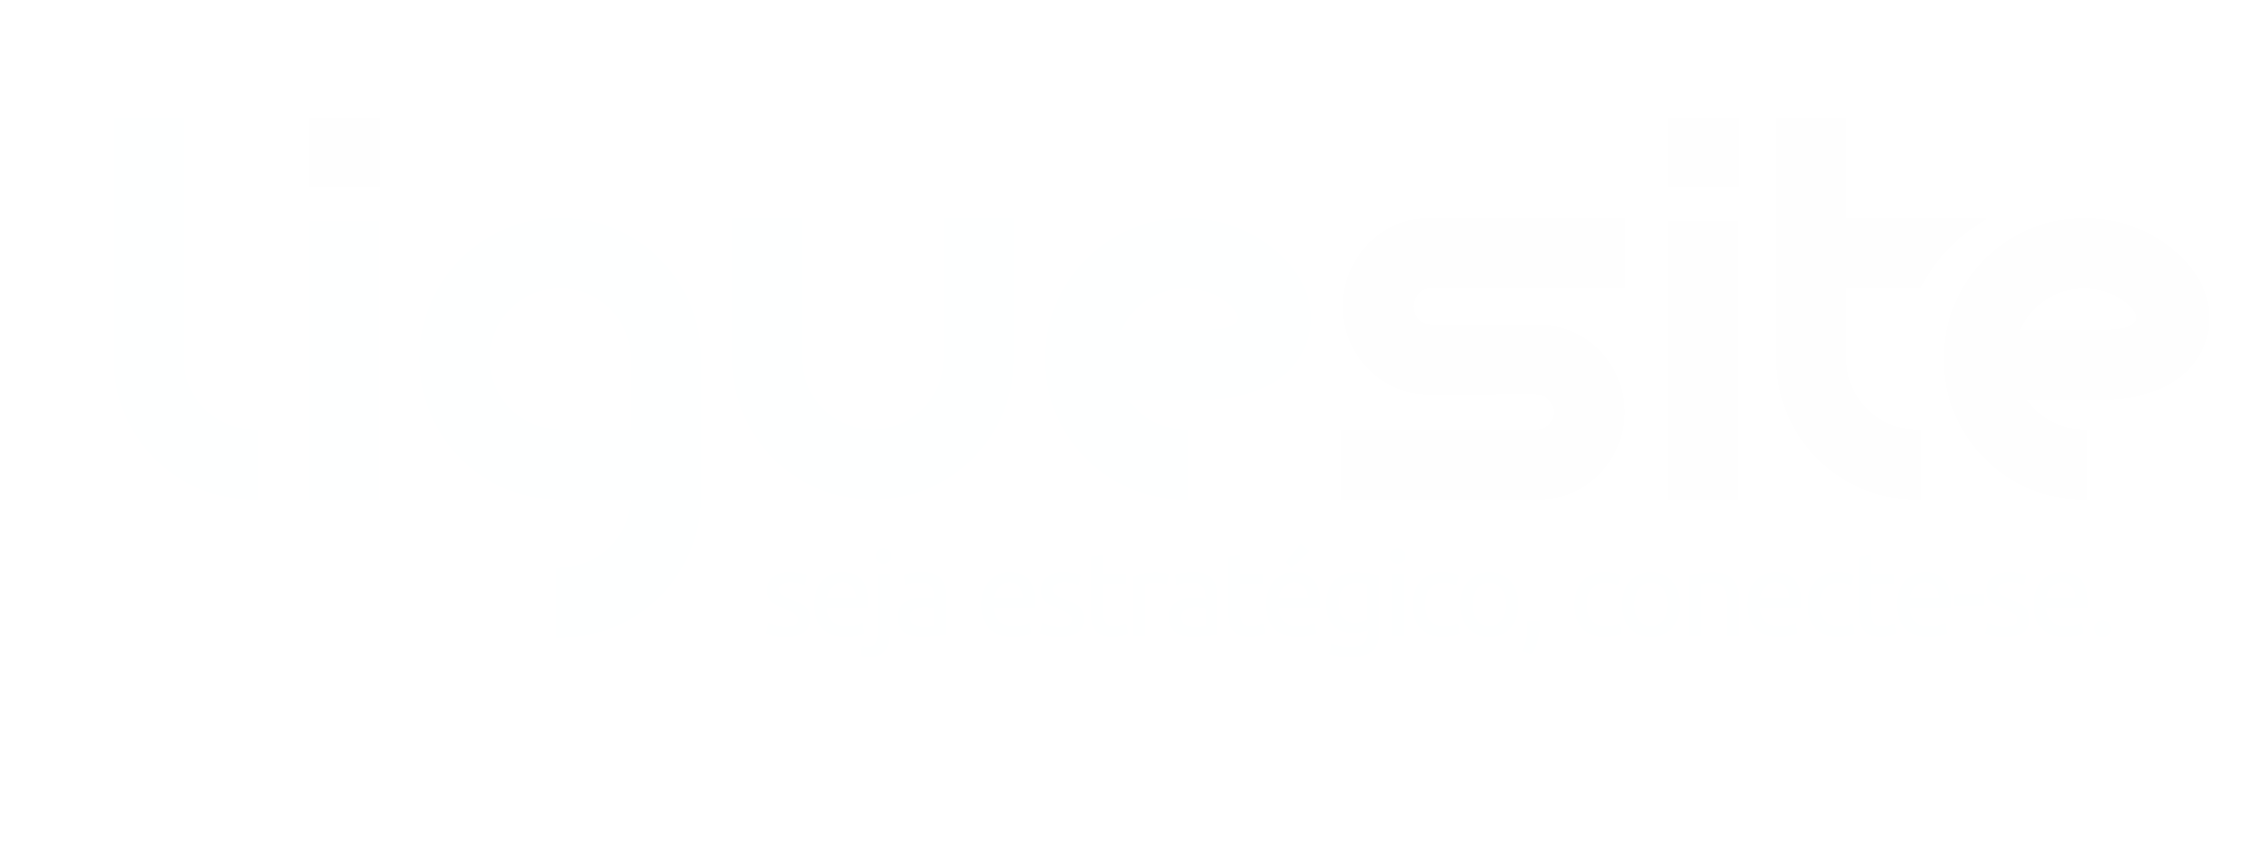 Ligue Site Unidade Sorocaba - Criação de Sites - Lojas Virtuais - Marketing Digital